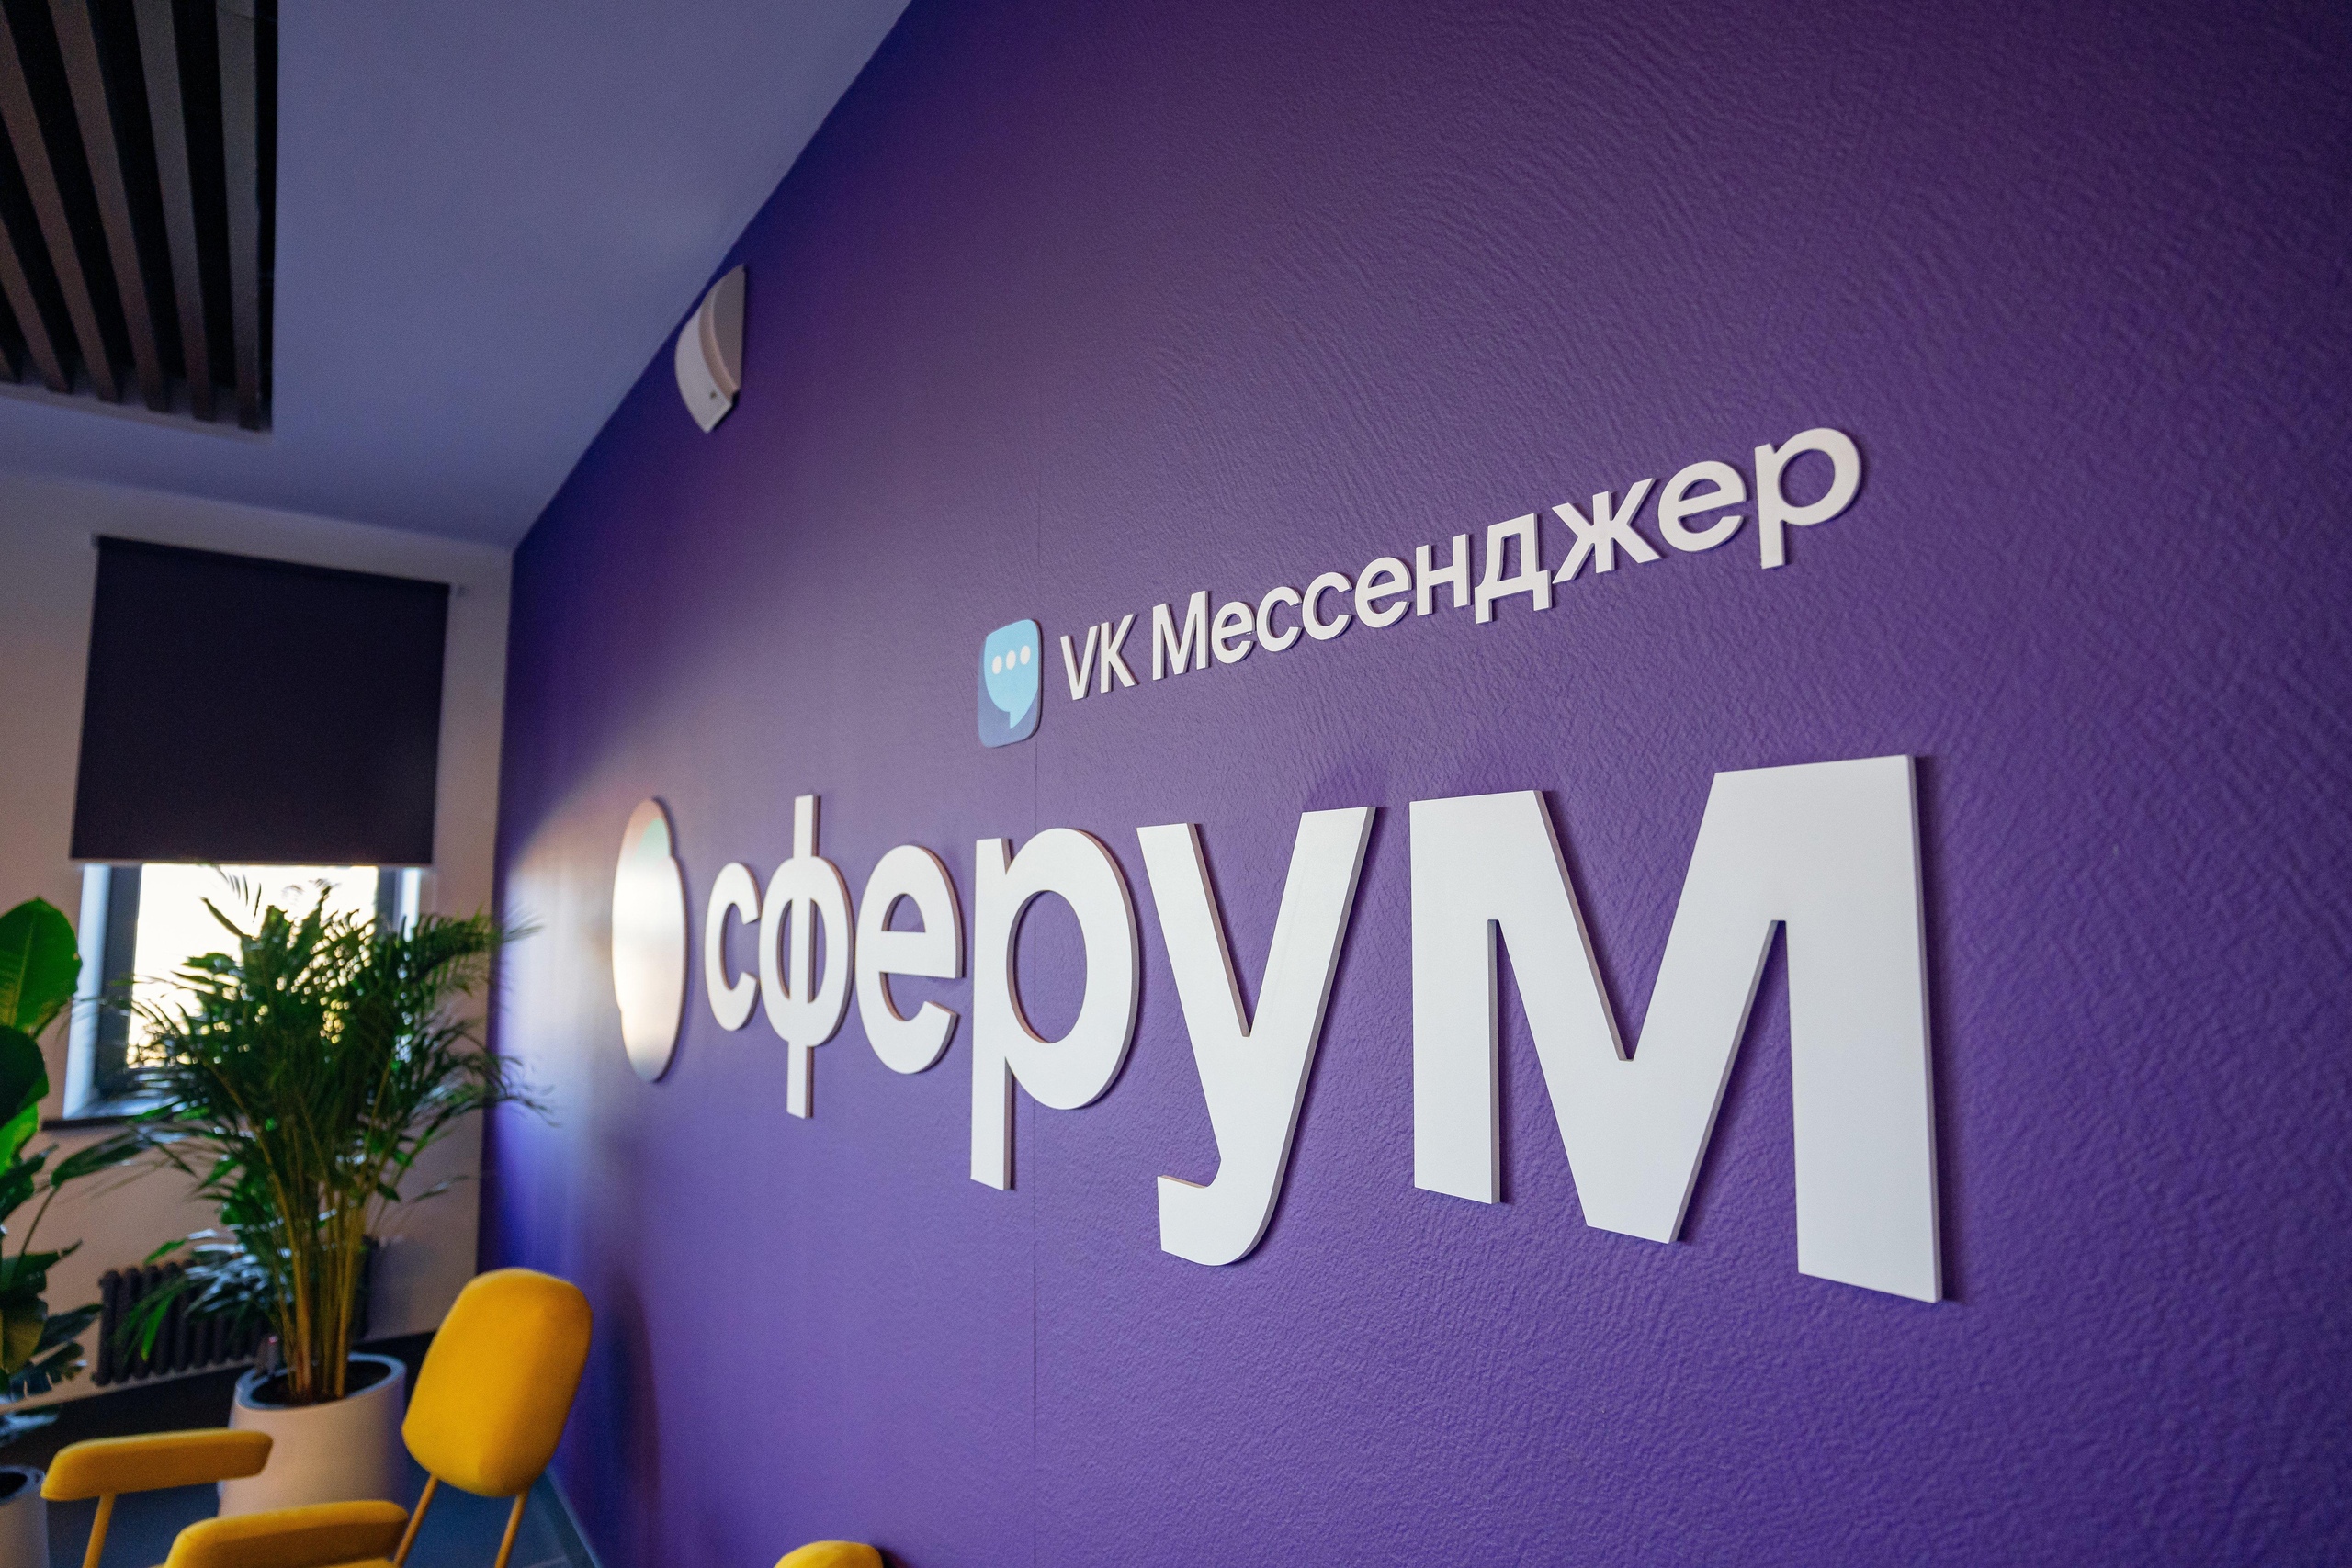 В российских школах начали системно подходить к вопросу образовательных онлайн-коммуникаций, чтобы сделать процесс удобным и безопасным для всех.